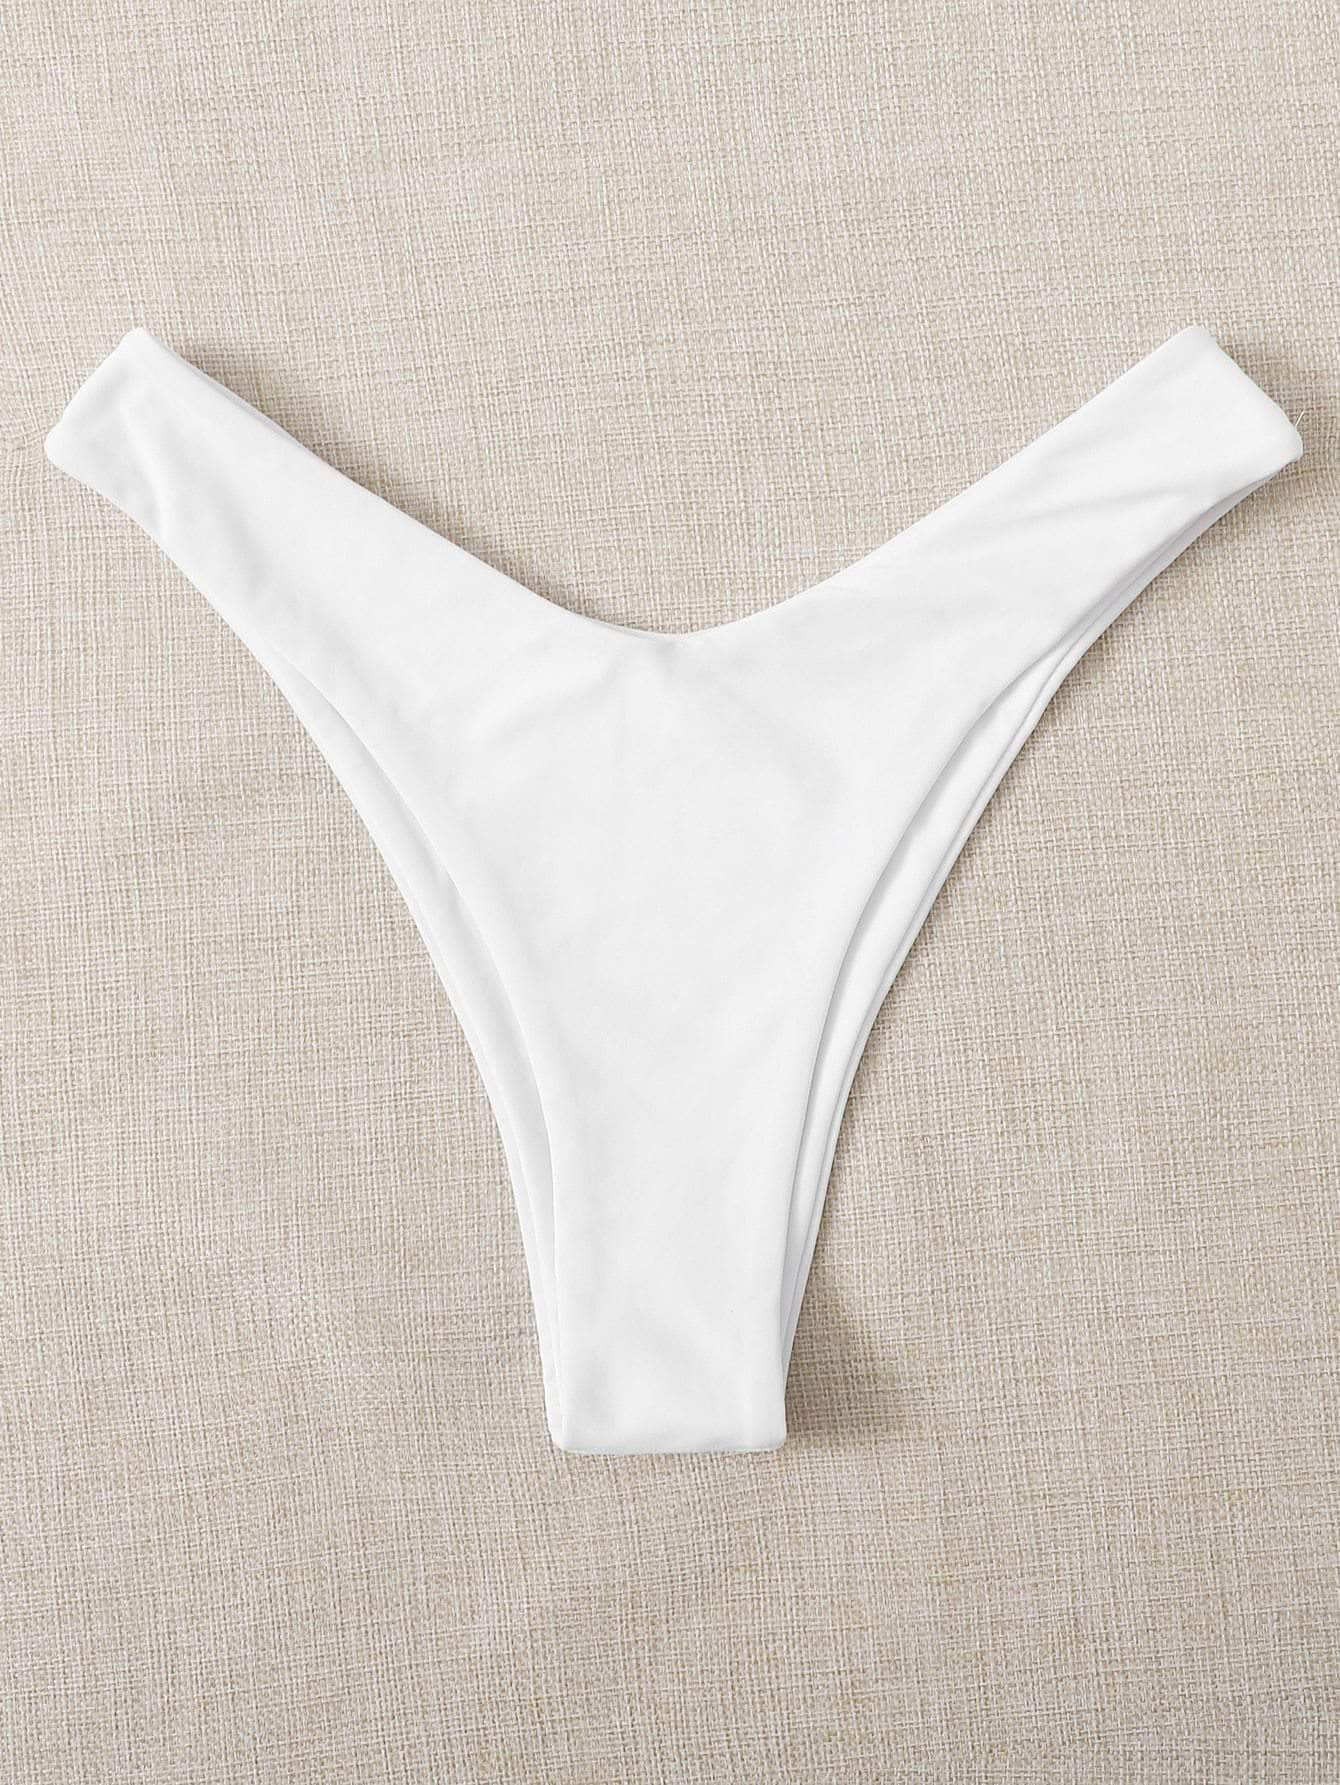 Blanco / XL Tangas bikini de pierna alta